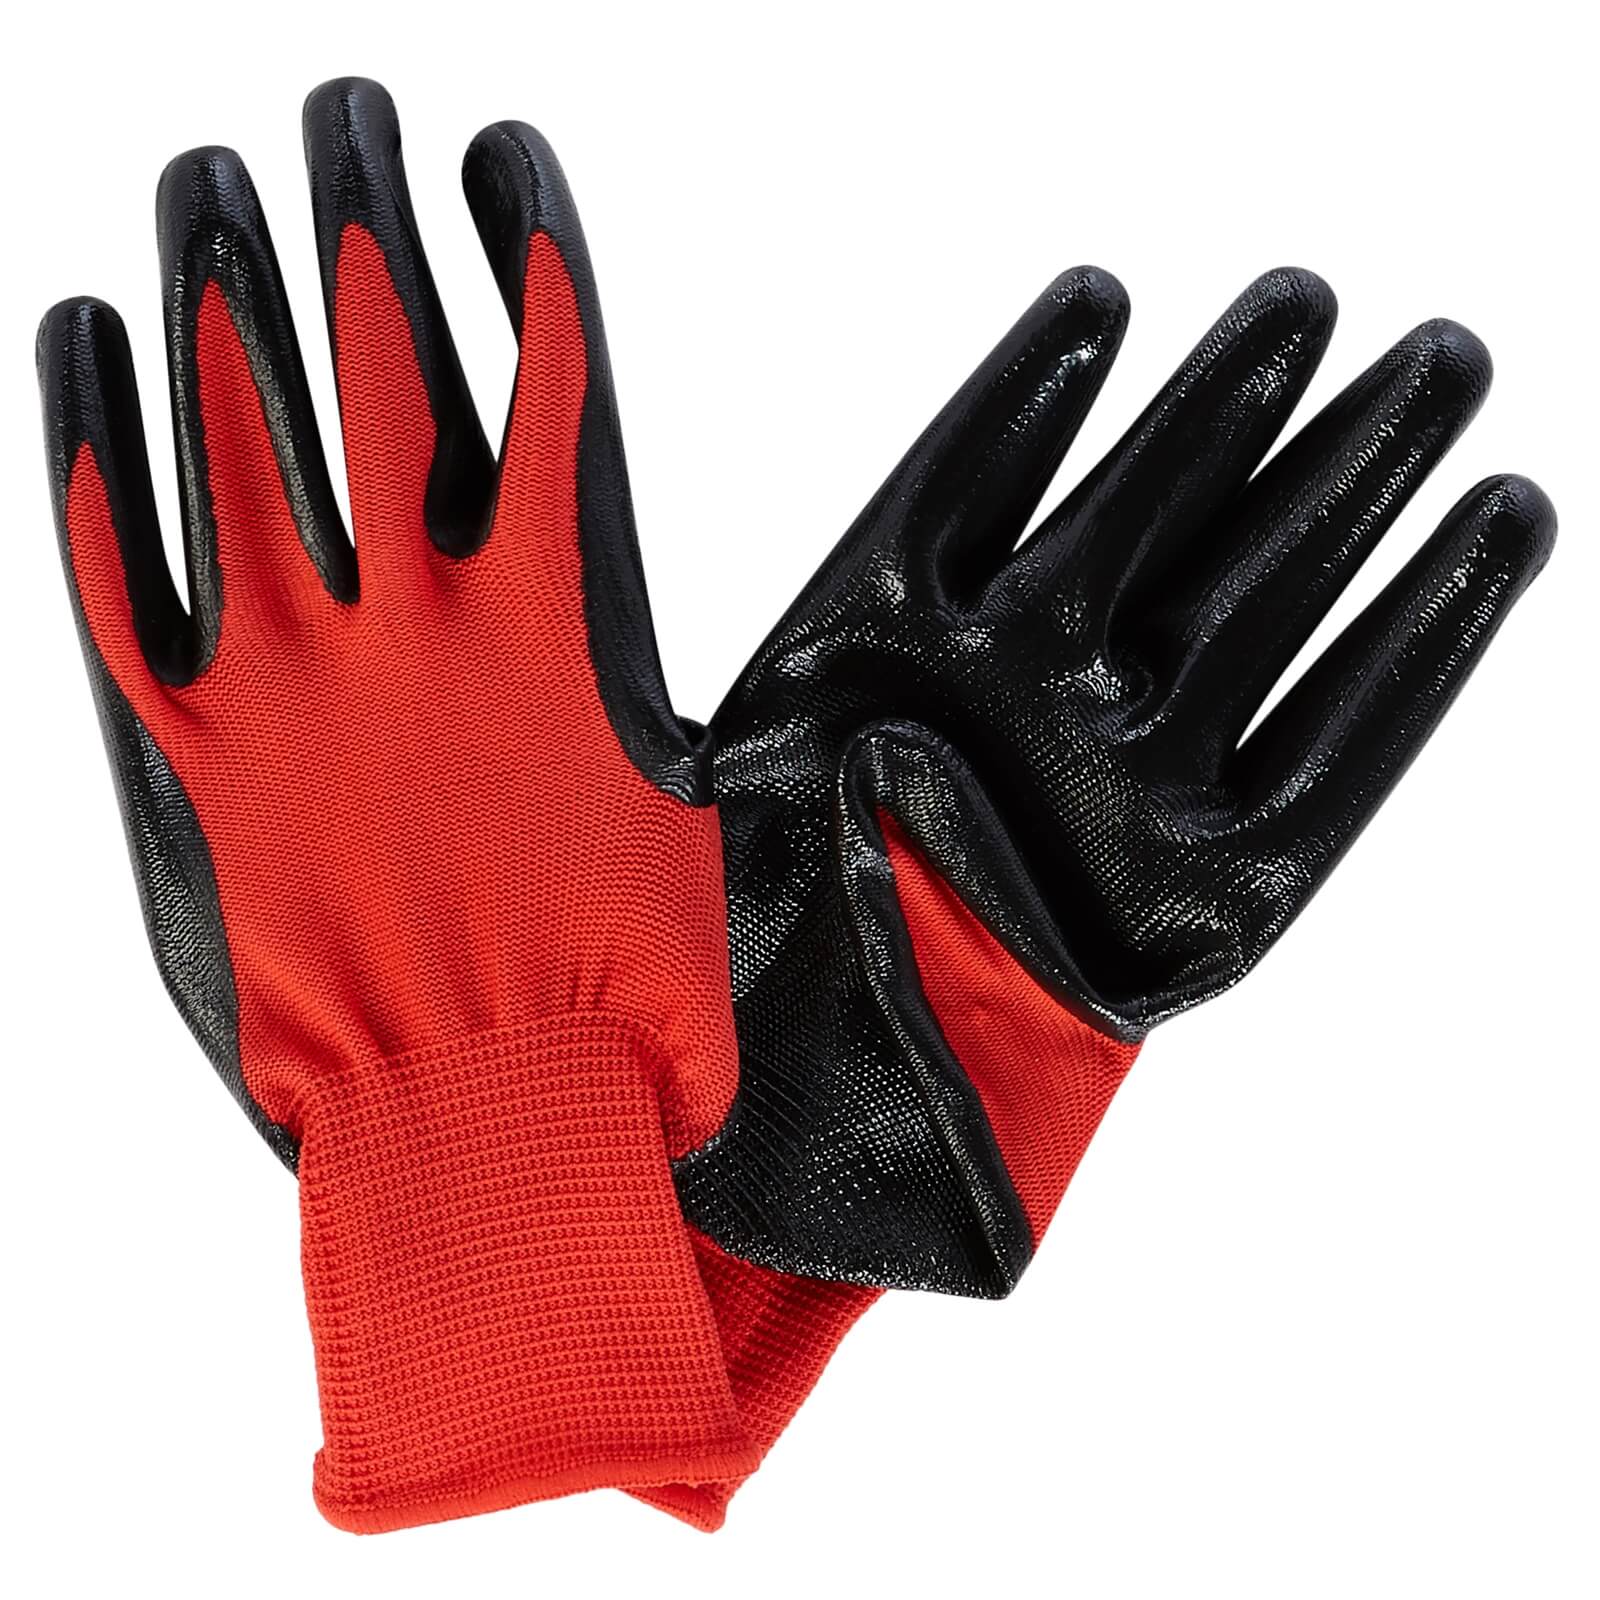 Homebuild Multi Purpose Gloves - 5 Pack - Medium